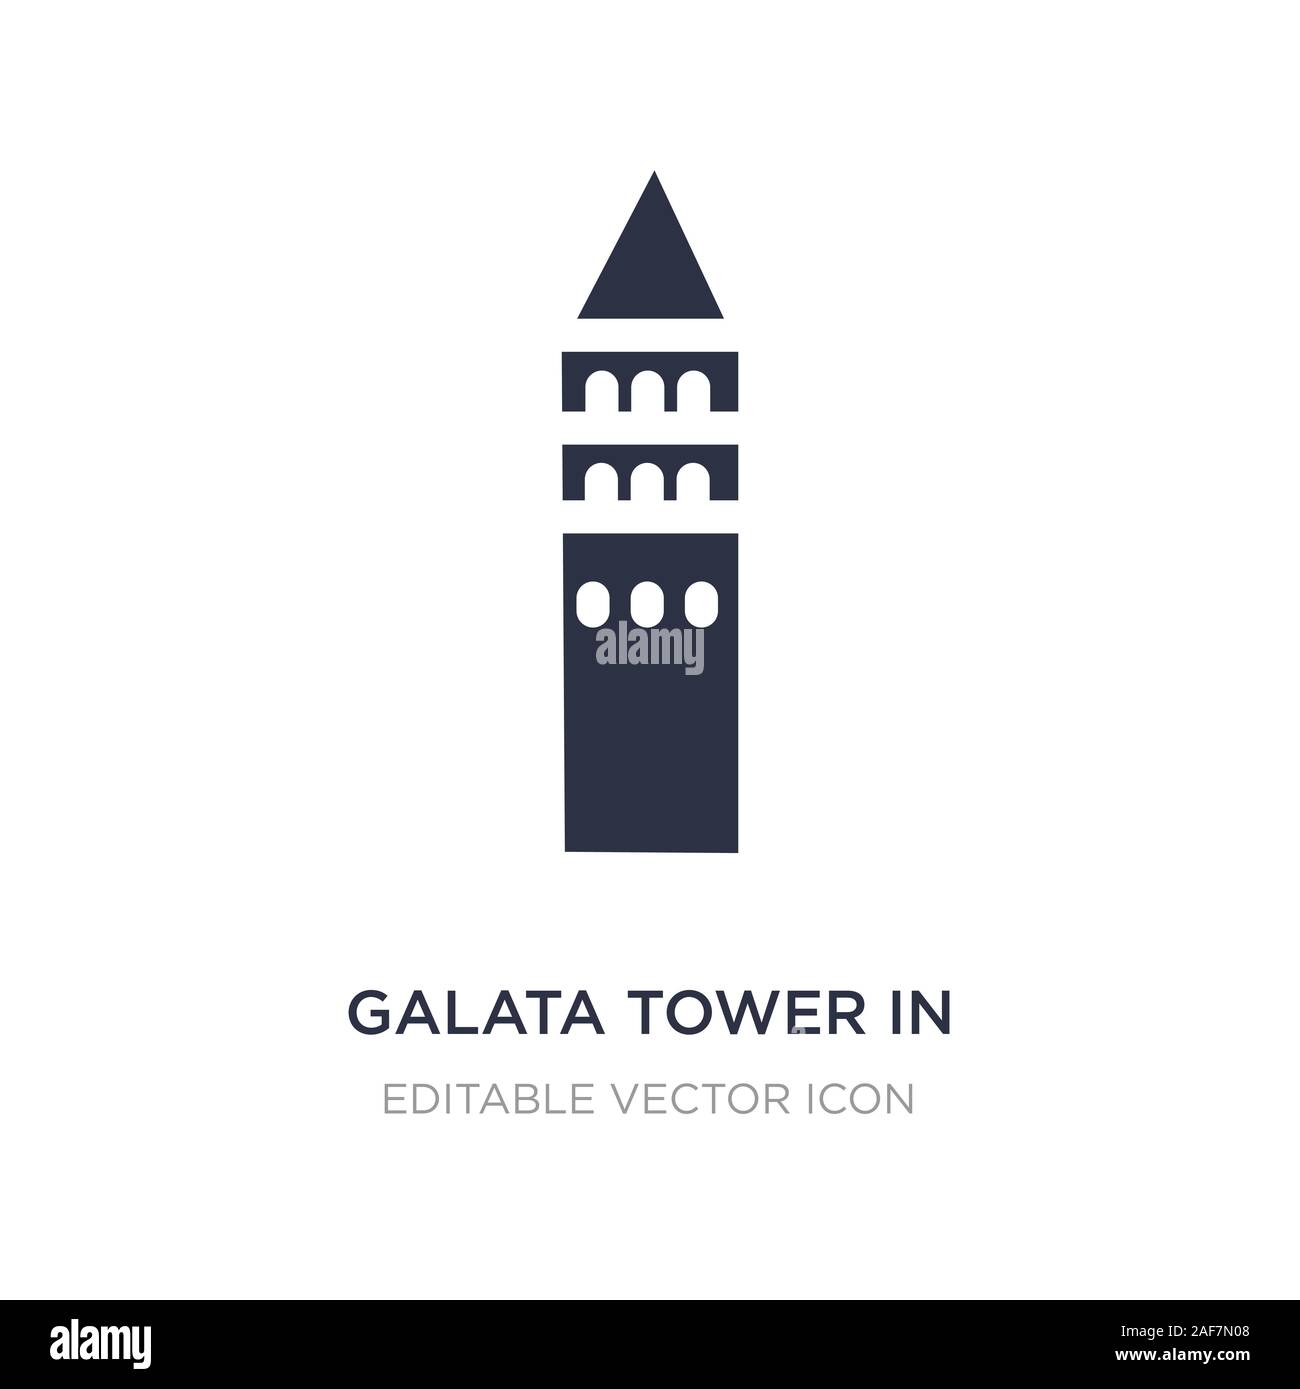 Galata Tower in Istanbul Symbol auf weißem Hintergrund. Einfaches element Abbildung von Denkmälern Konzept. Galata Tower in Istanbul Symbol Design. Stock Vektor